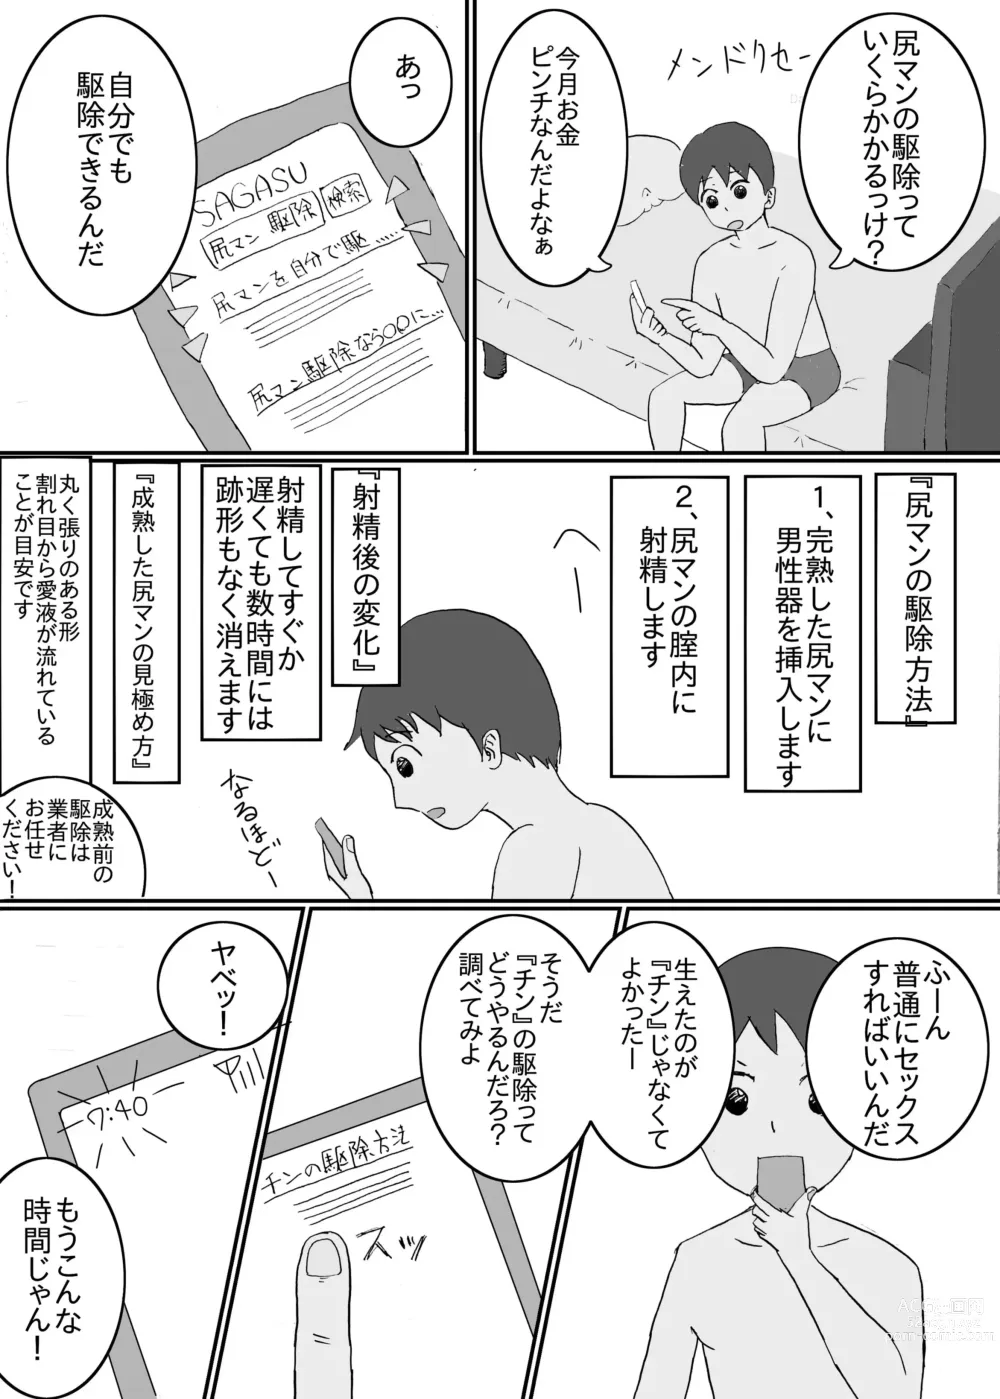 Page 10 of doujinshi Asaoki Tara Bed no Naka ni Manko ga Haeteta Hanashi